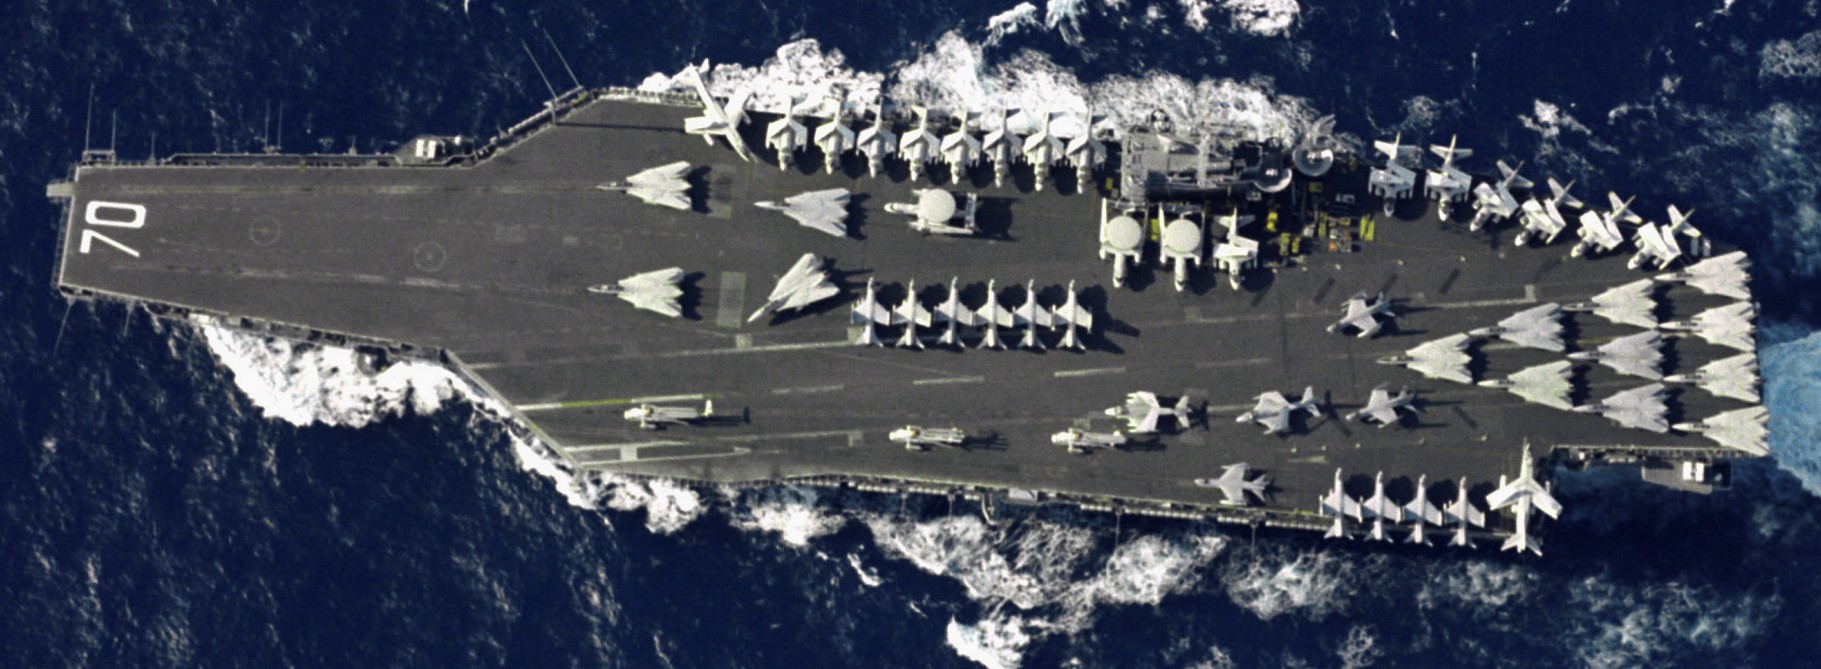 cvn-70 uss carl vinson nimitz class aircraft carrier air wing cvw-15 us navy pacific ocean 51